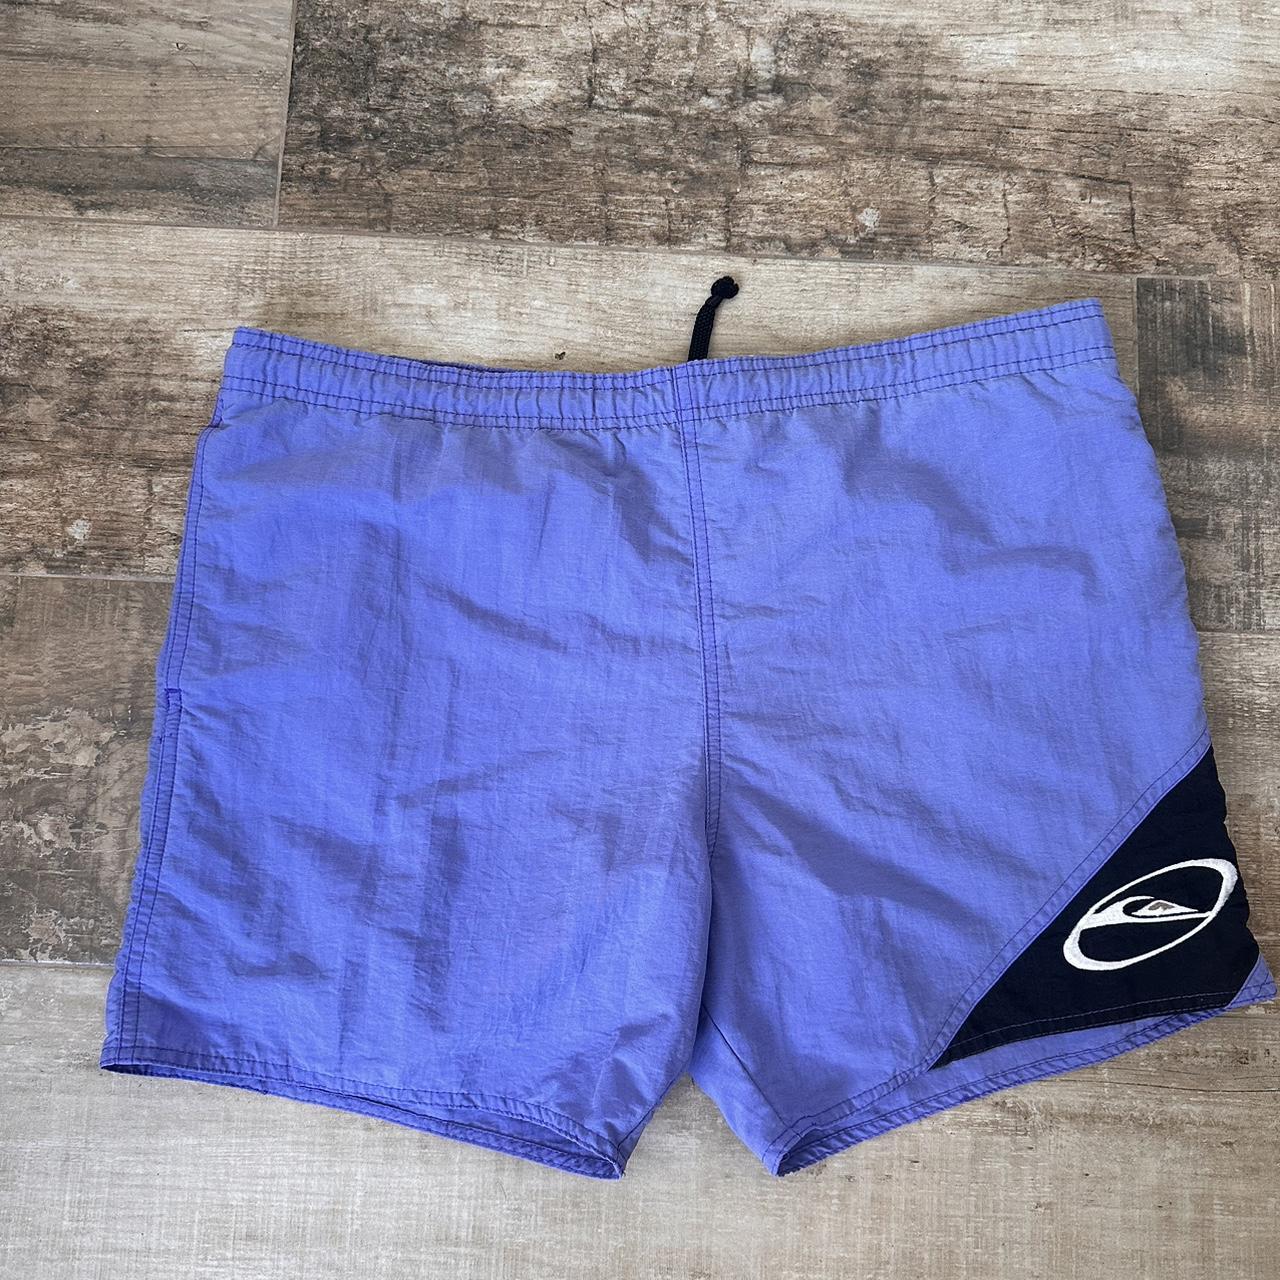 Vintage quicksilver board shorts - Depop